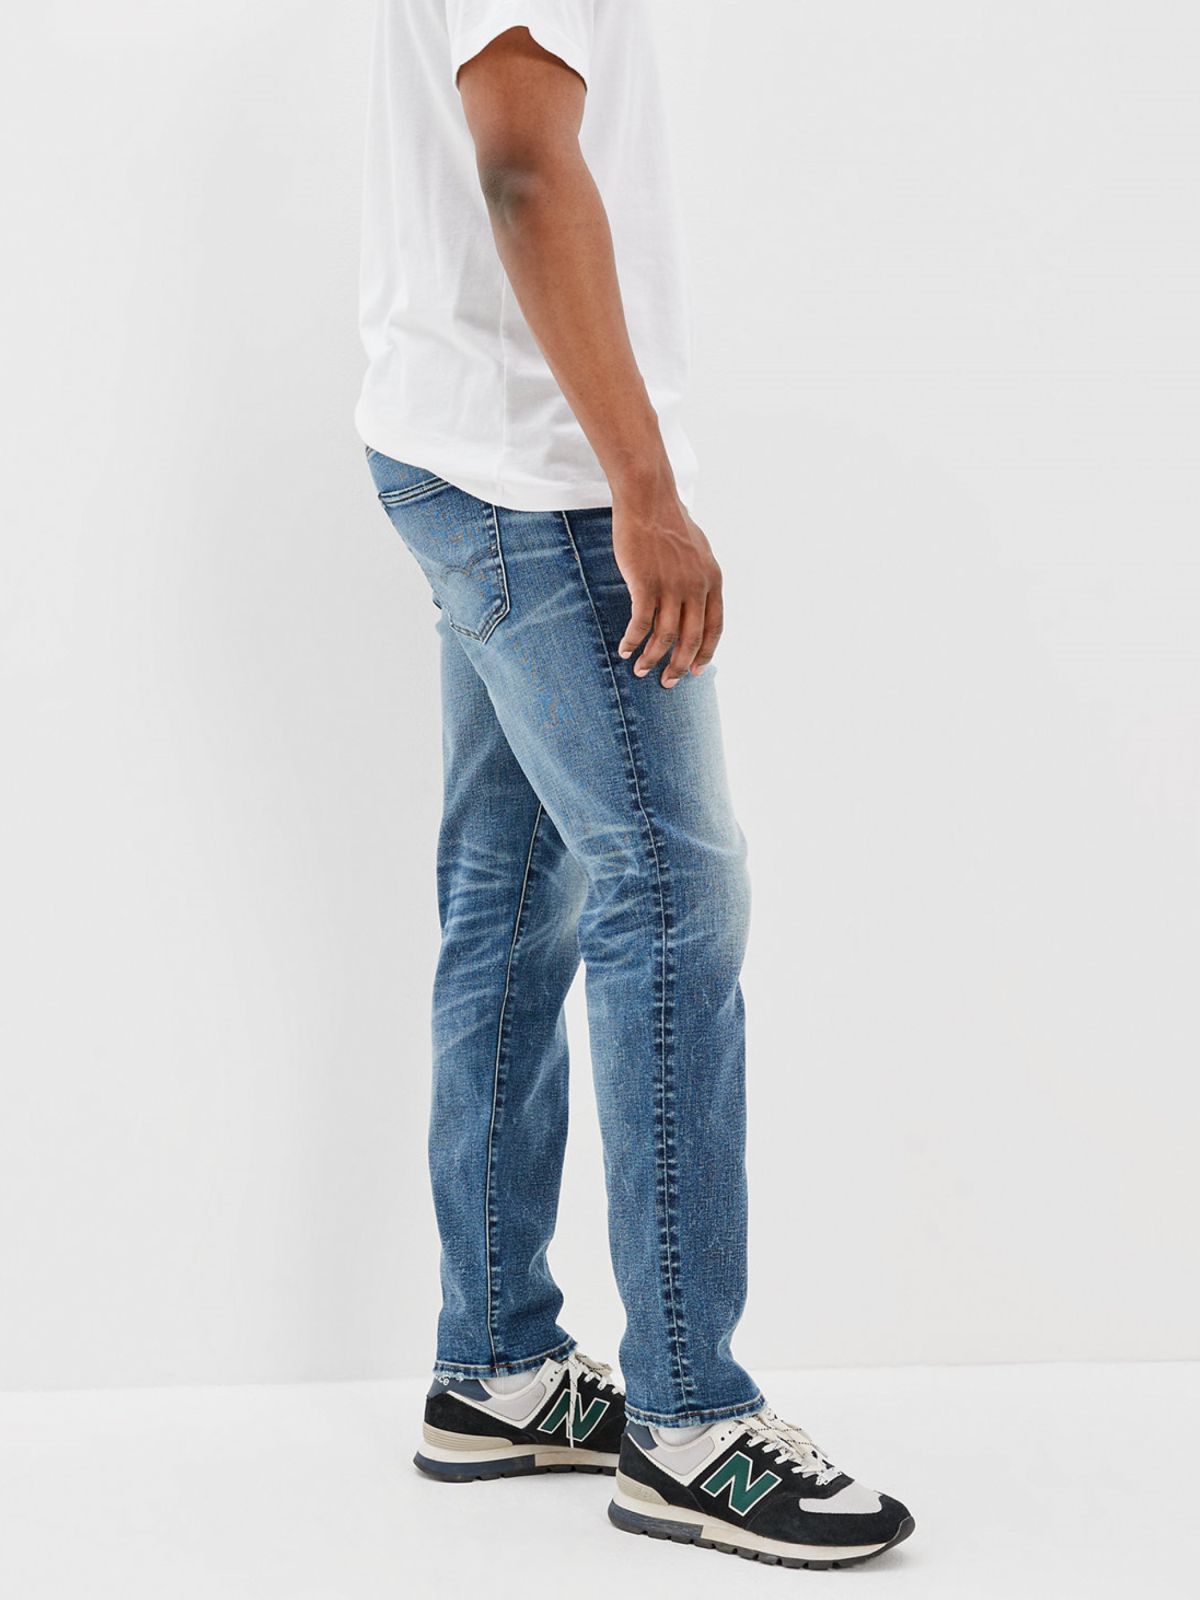  ג'ינס ארוך Dark clean 90S baggy של AMERICAN EAGLE